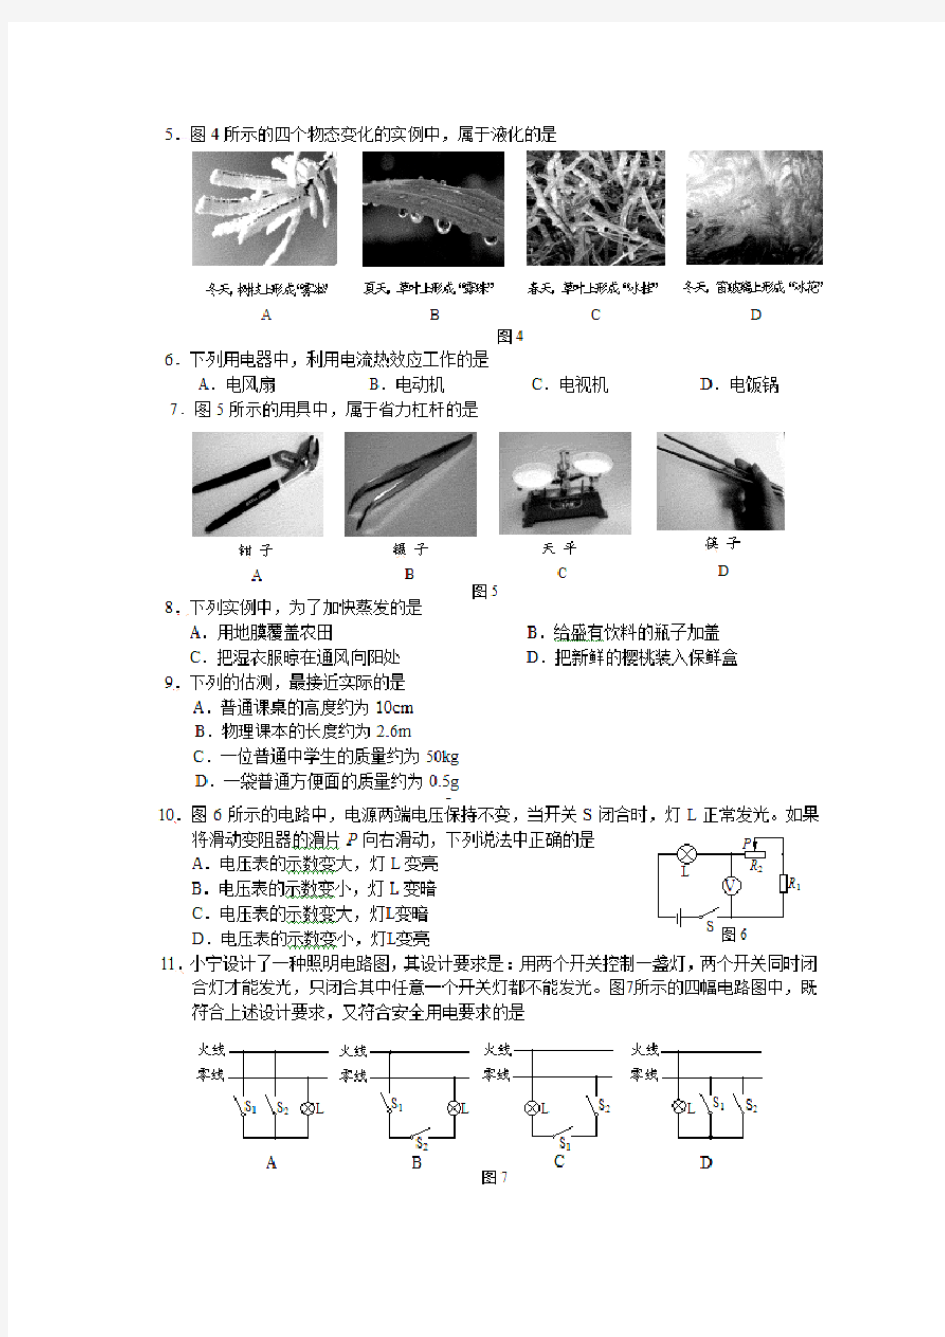 (免费)2010年北京中考物理试题及答案(试卷分析)